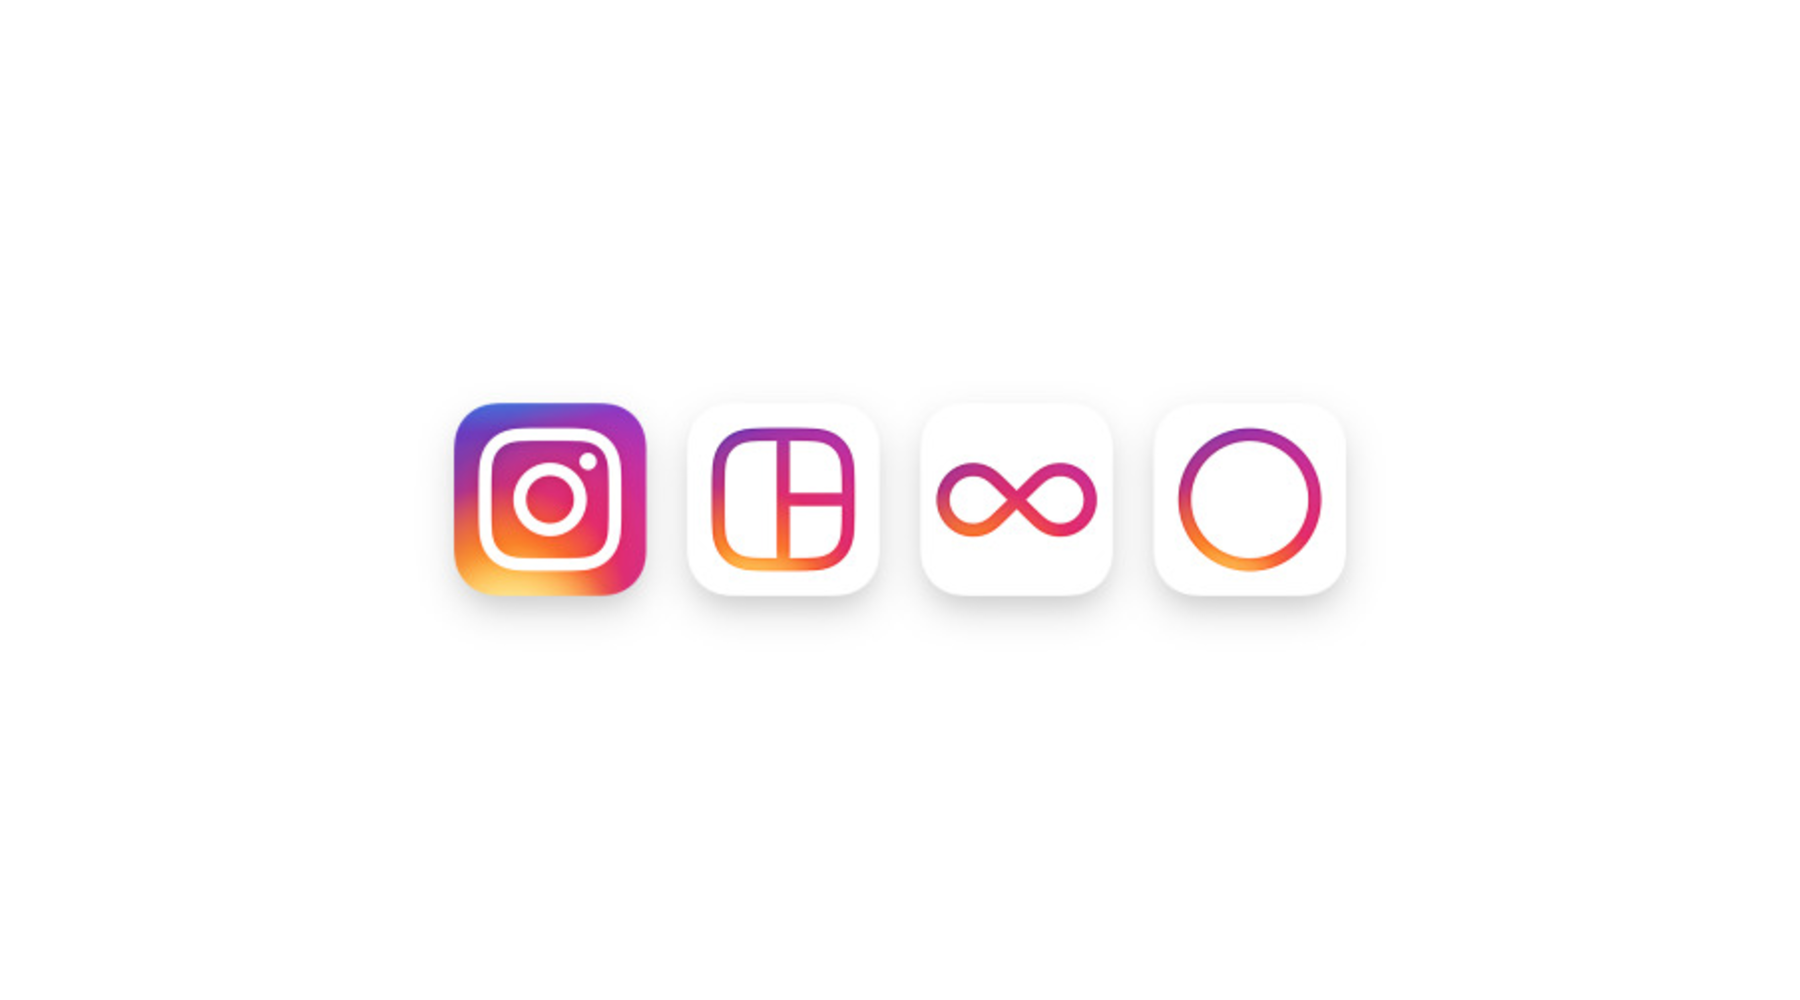 Instagram's new logo prompts retro complaints - Marketplace